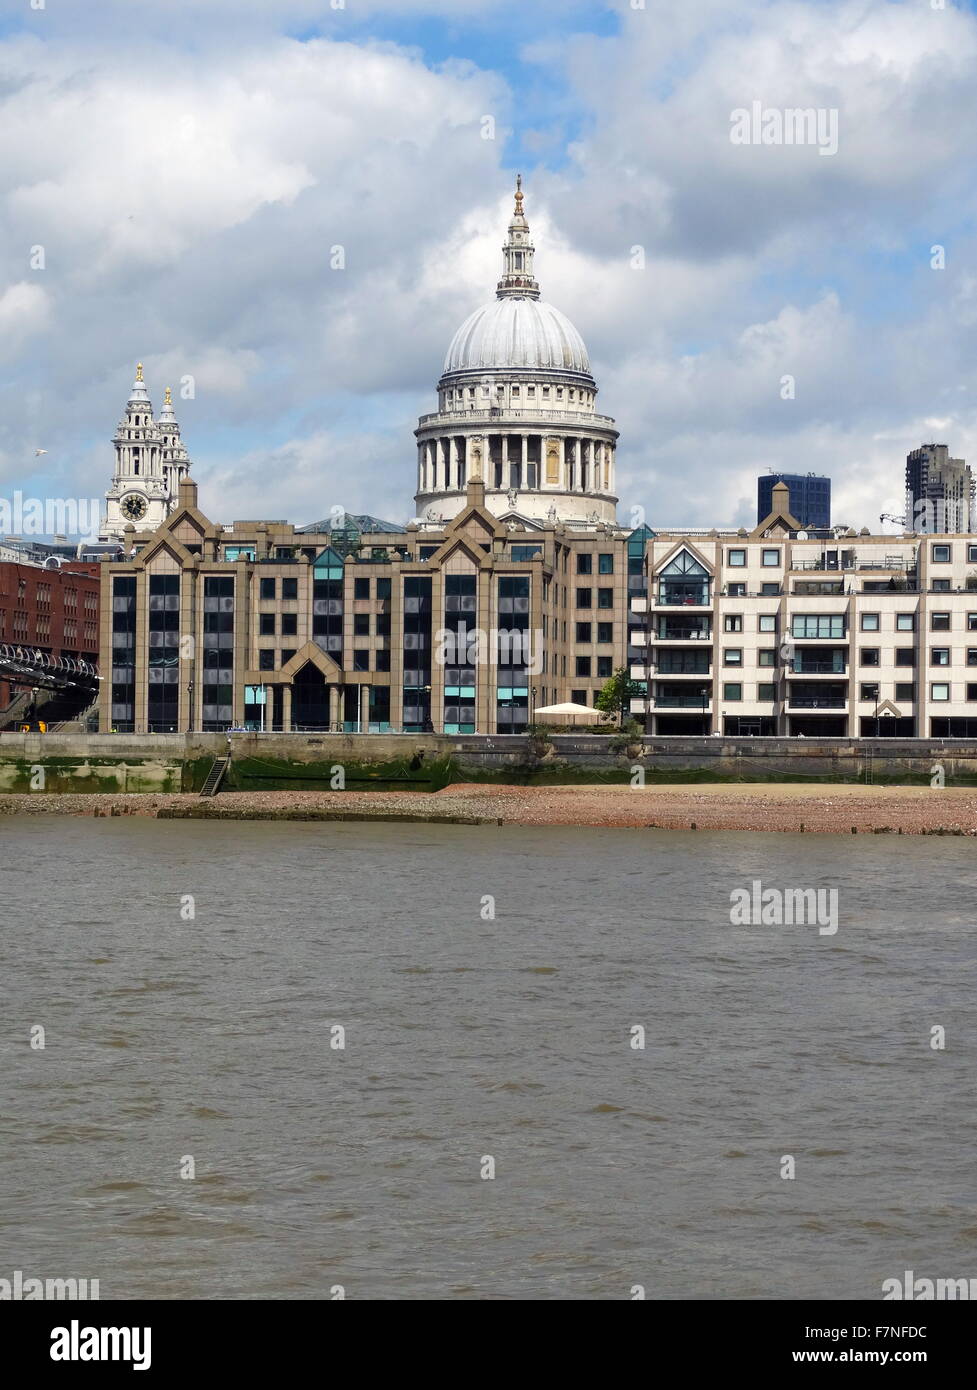 Photographie de la coupole de la cathédrale Saint-Paul, une cathédrale anglicane, le siège de l'évêque de Londres et l'église-mère du diocèse de London. Datée 2015 Banque D'Images